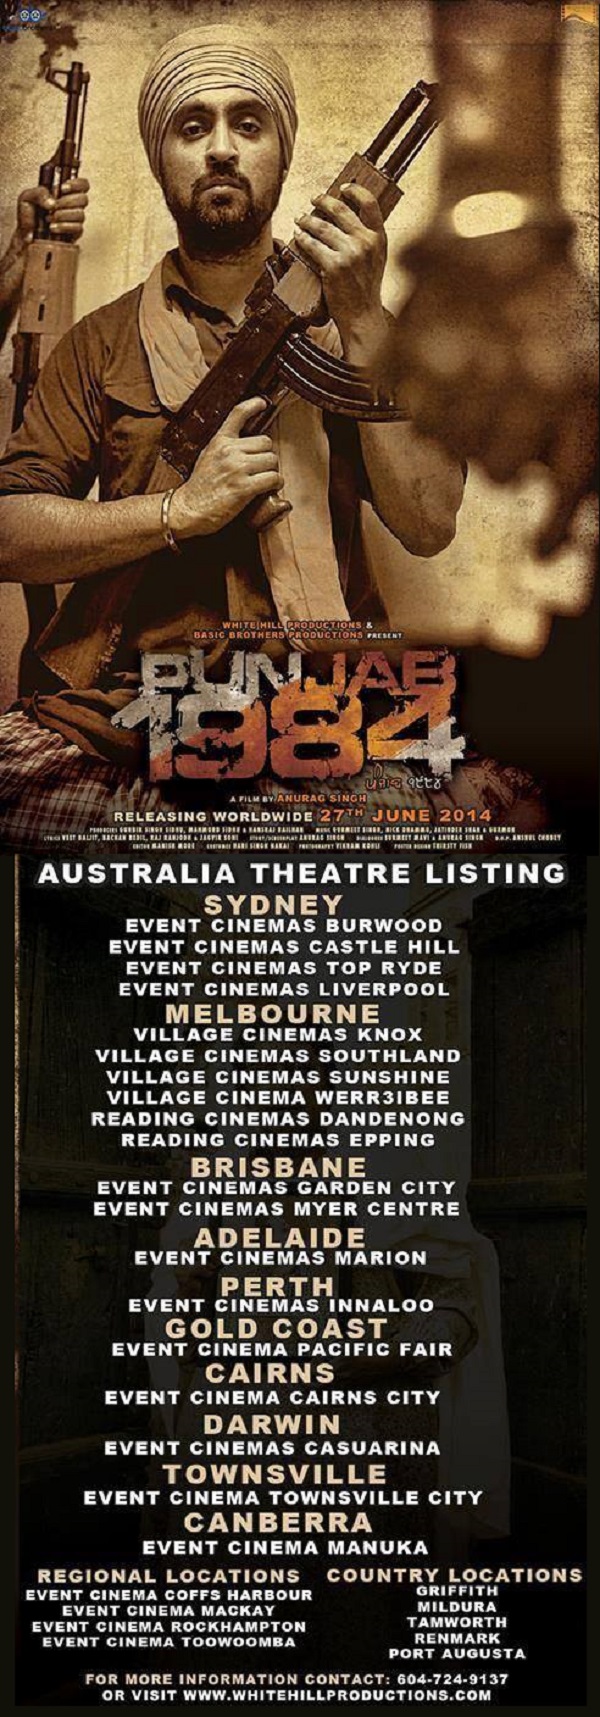 Punjab 1984 Movie  Cinema listings in Australia